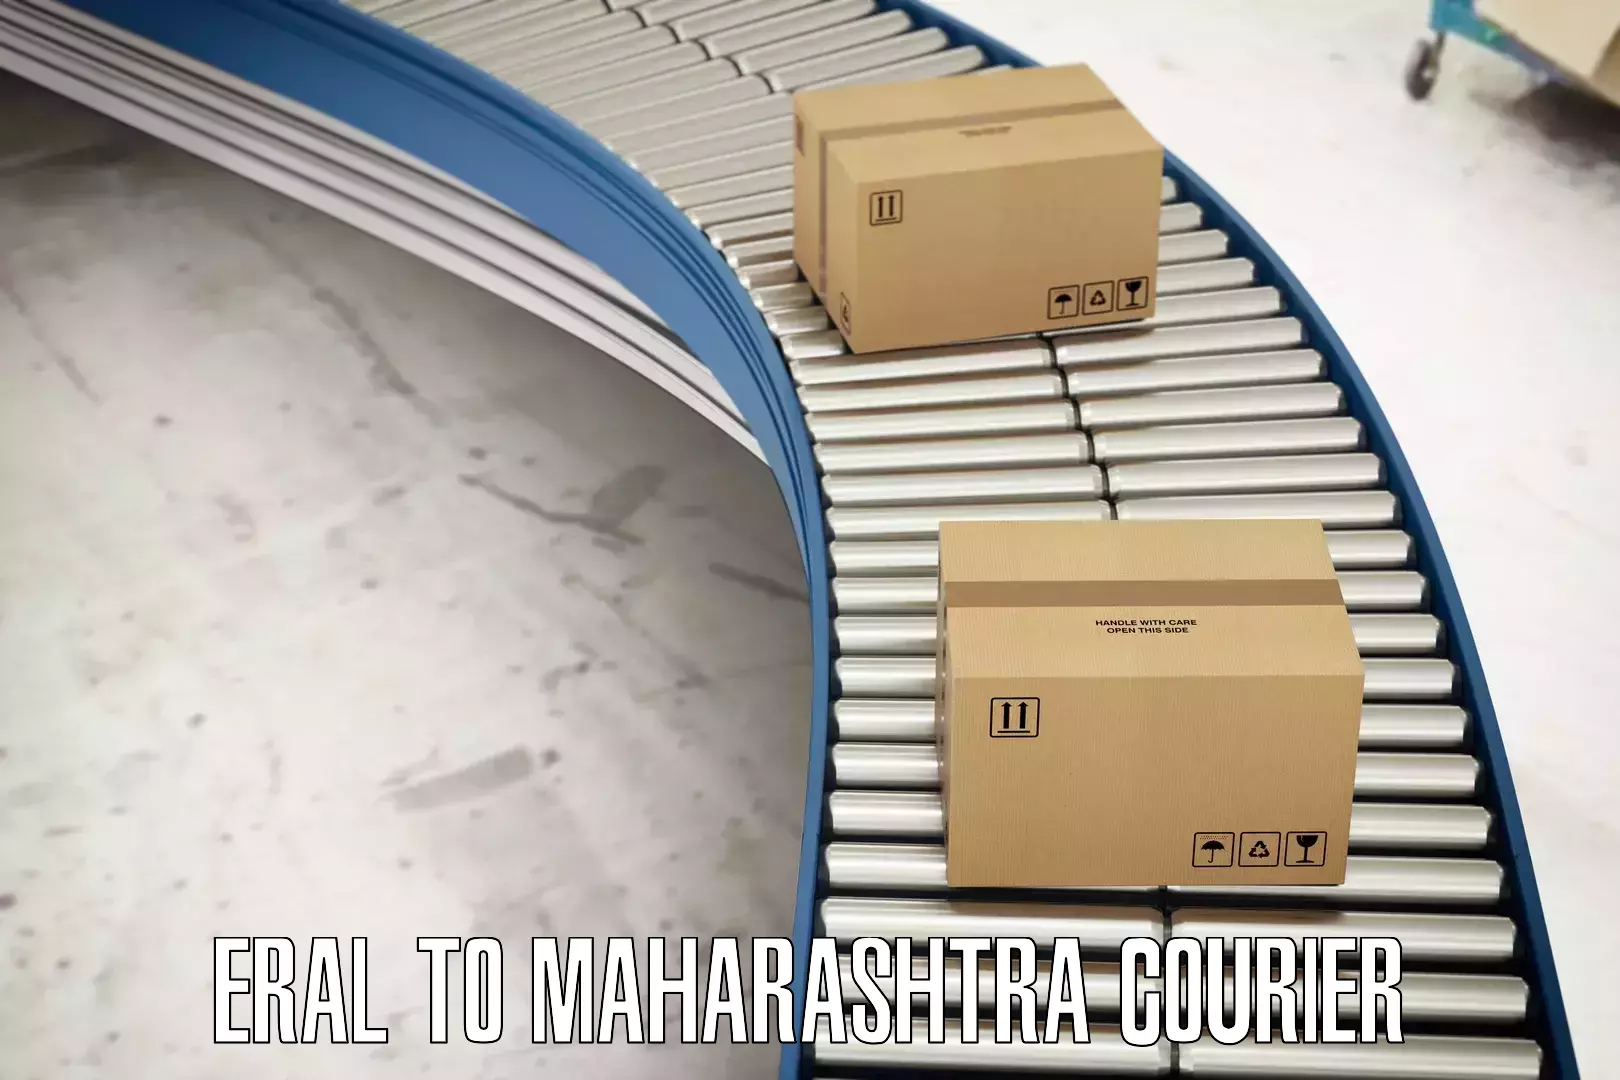 Versatile courier offerings Eral to Tata Institute of Social Sciences Mumbai